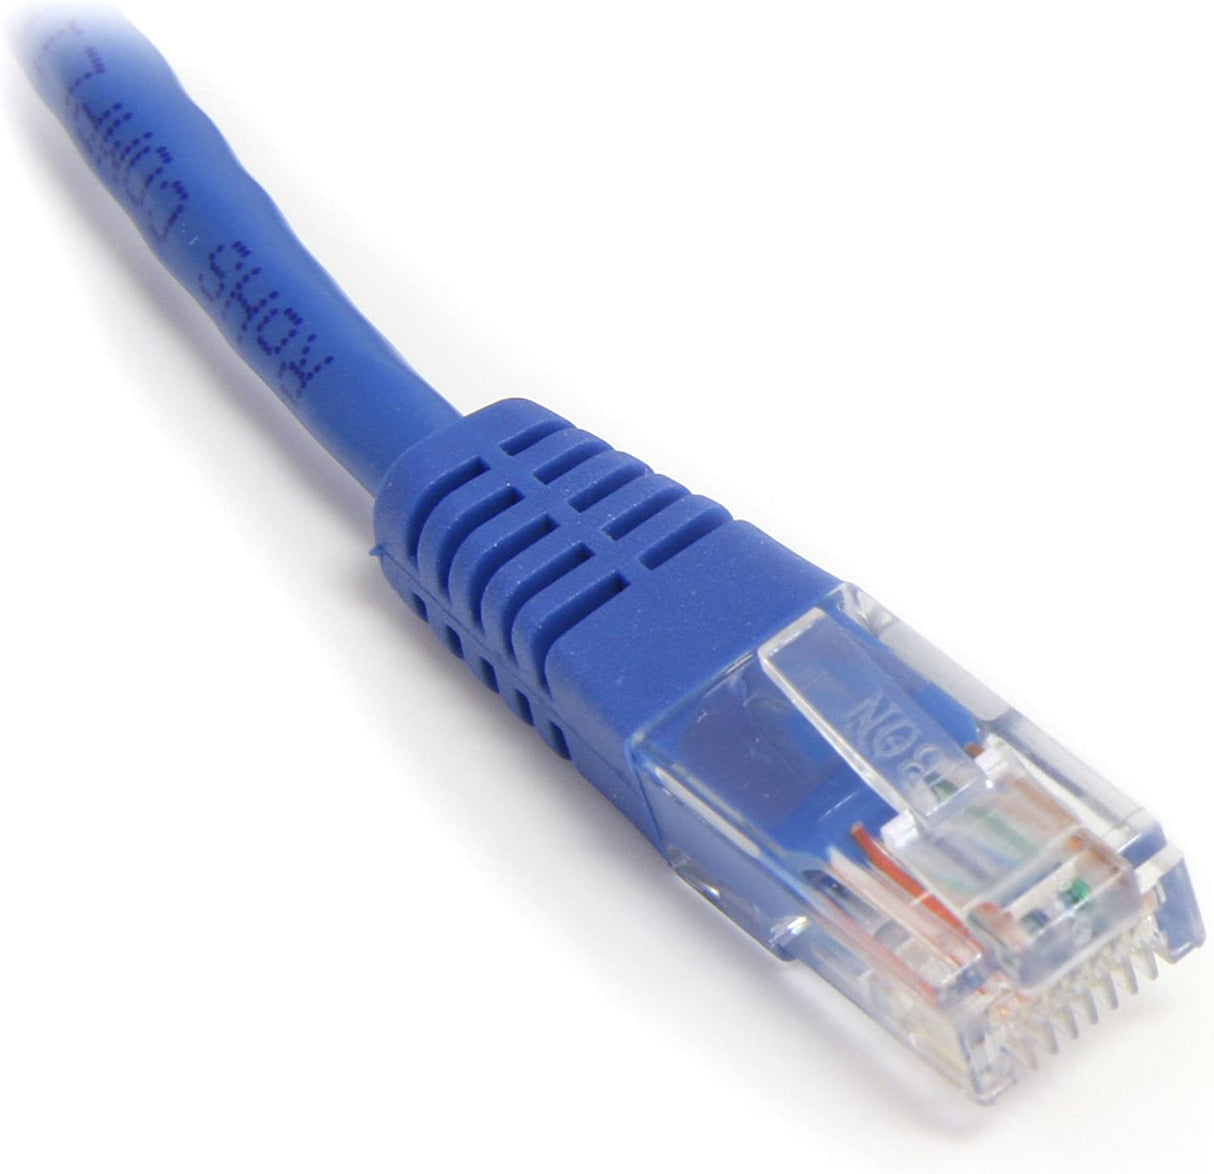 StarTech.com 35 ft Cat5e Patch Cable with Molded RJ45 Connectors - Blue - Cat5e Ethernet Patch Cable - 35ft UTP Cat 5e Patch Cord (M45PATCH35BL) 35 ft / 10.5m Blue